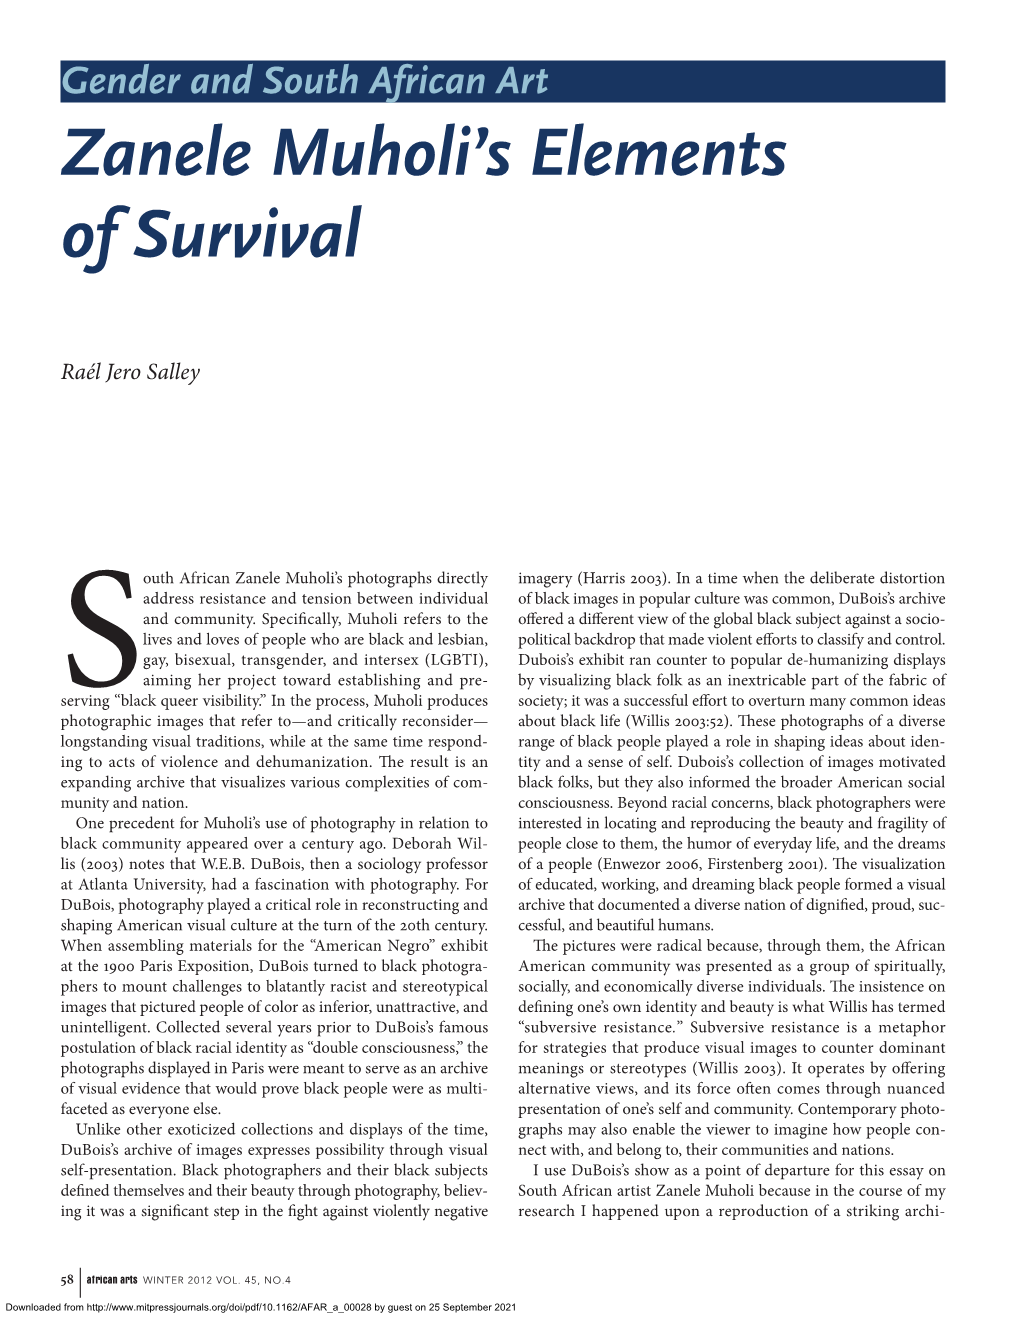 Zanele Muholi's Elements of Survival